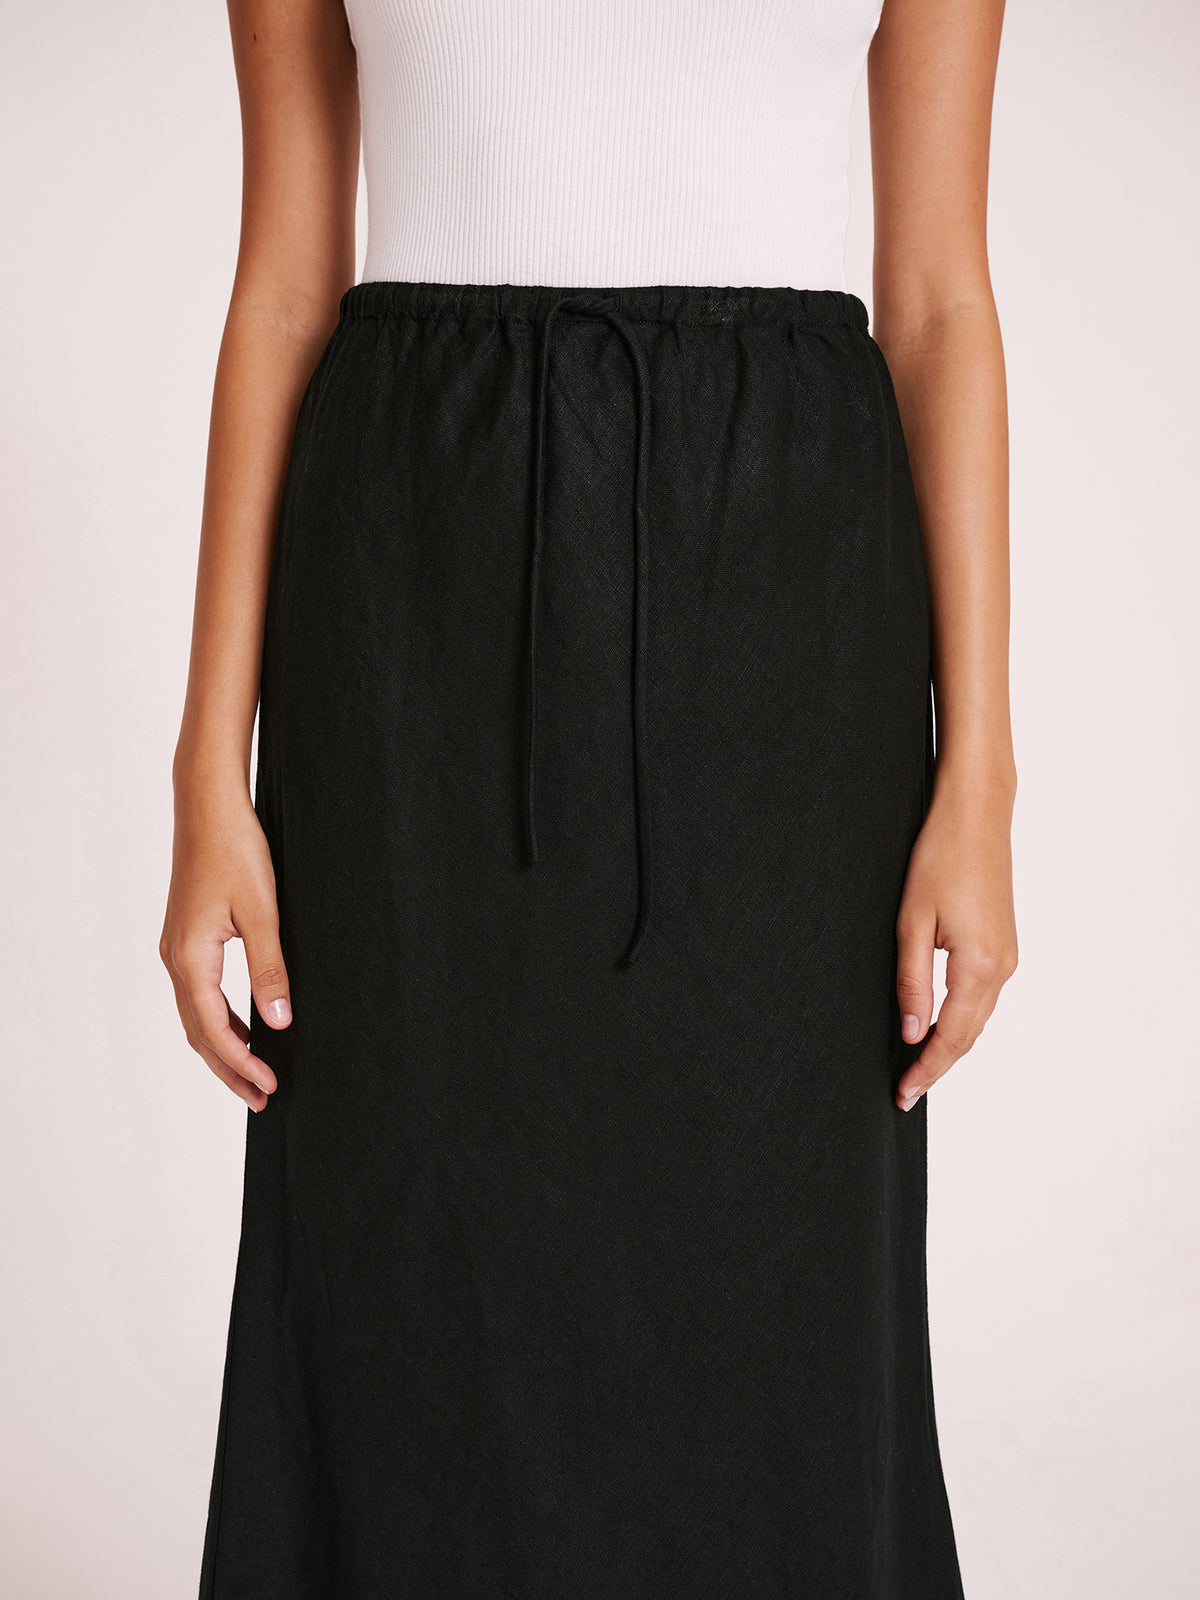 Amani Linen Skirt in Black